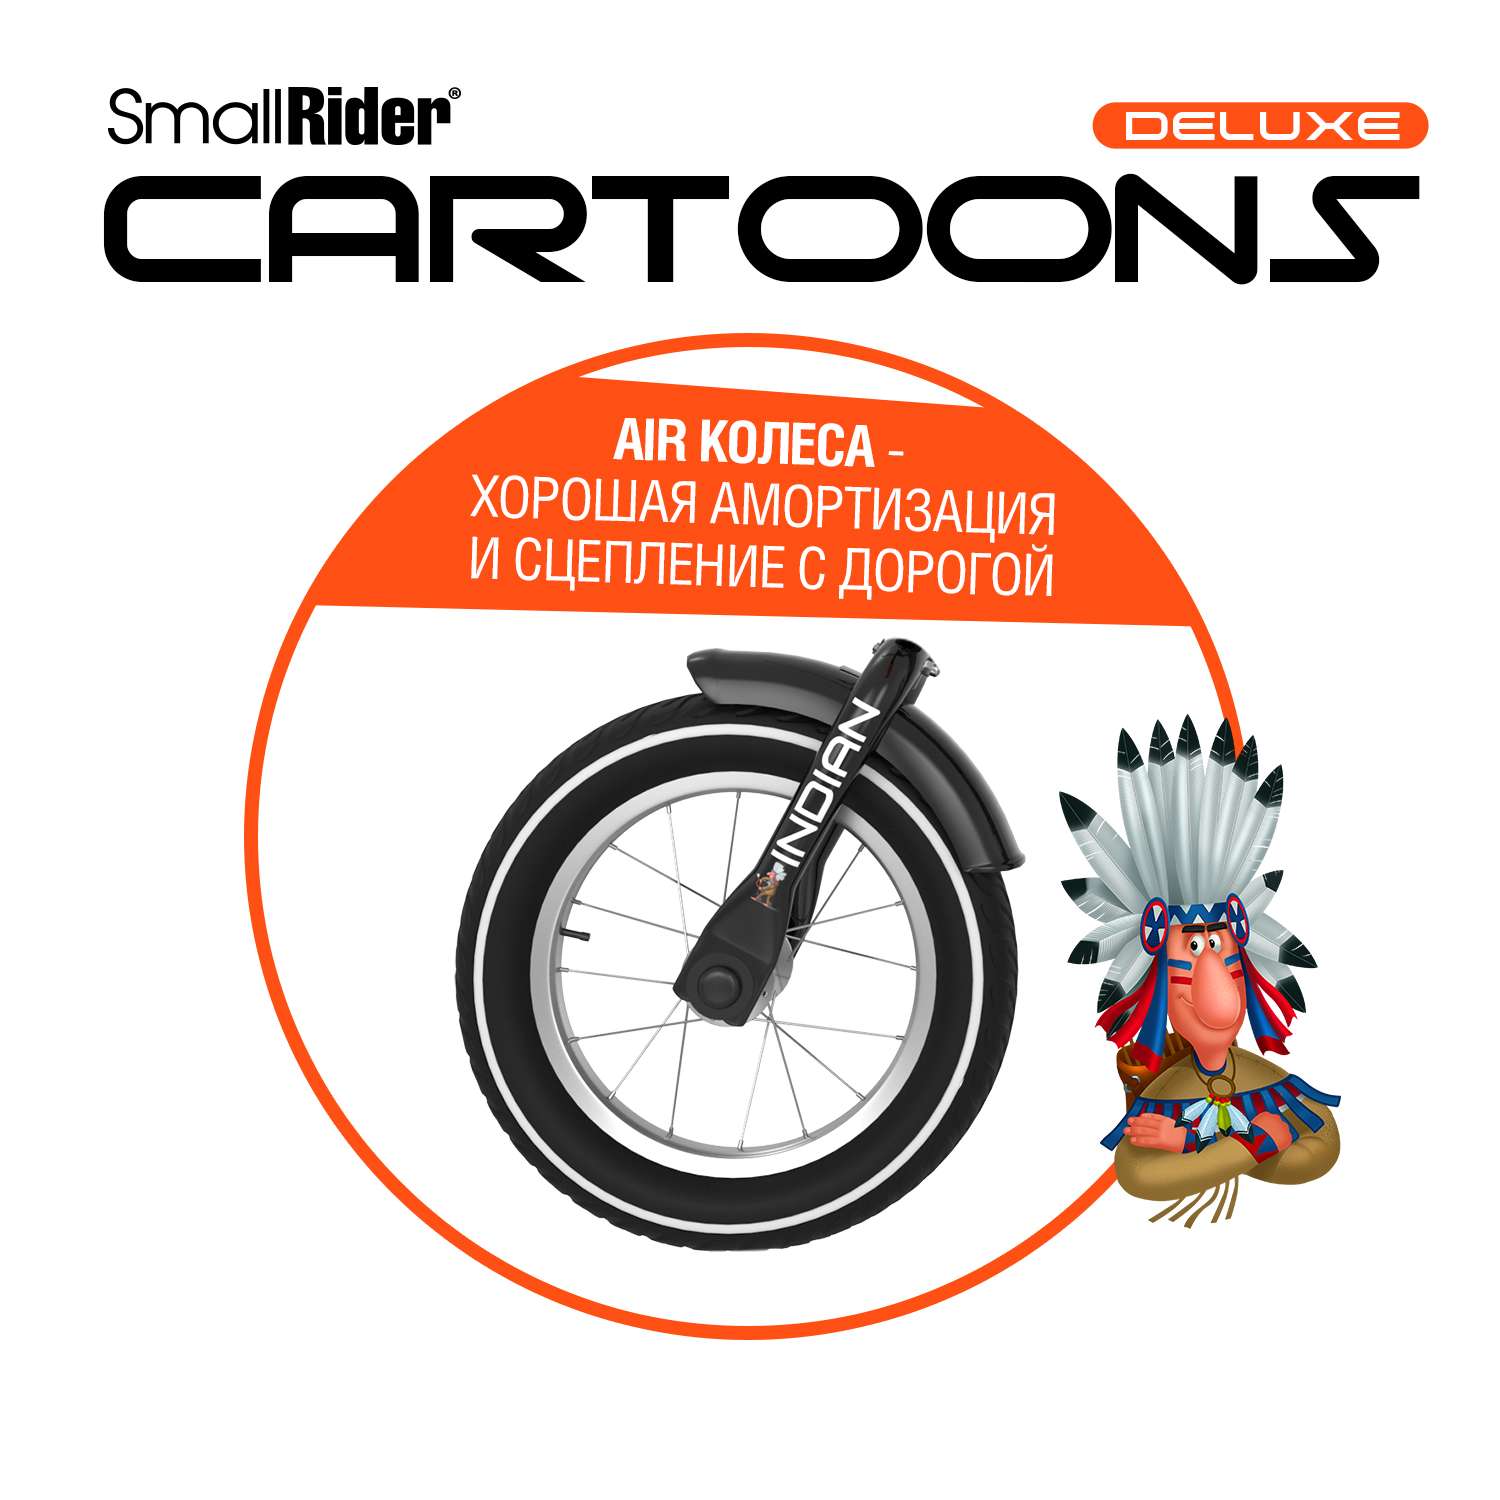 Беговел Small Rider Cartoons Deluxe Air индеец - фото 6